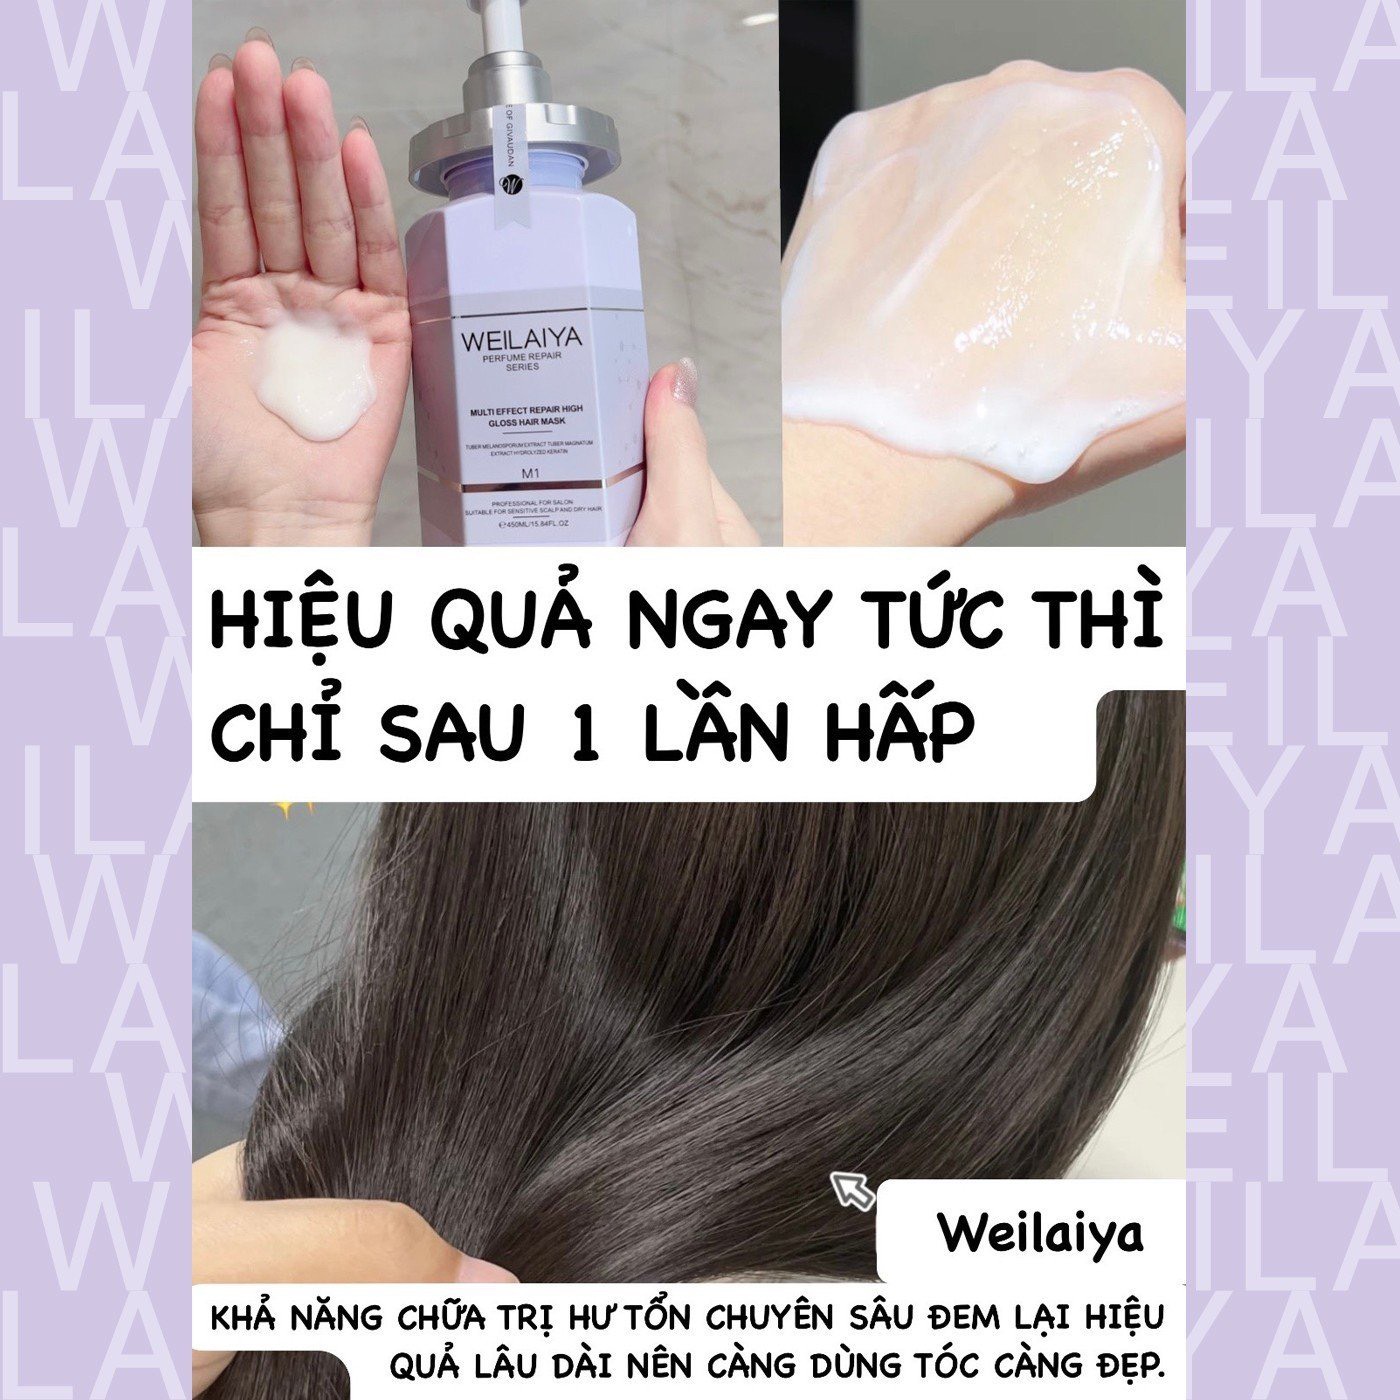 Hiệu quả của hấp tóc Weilaiya đa tầng